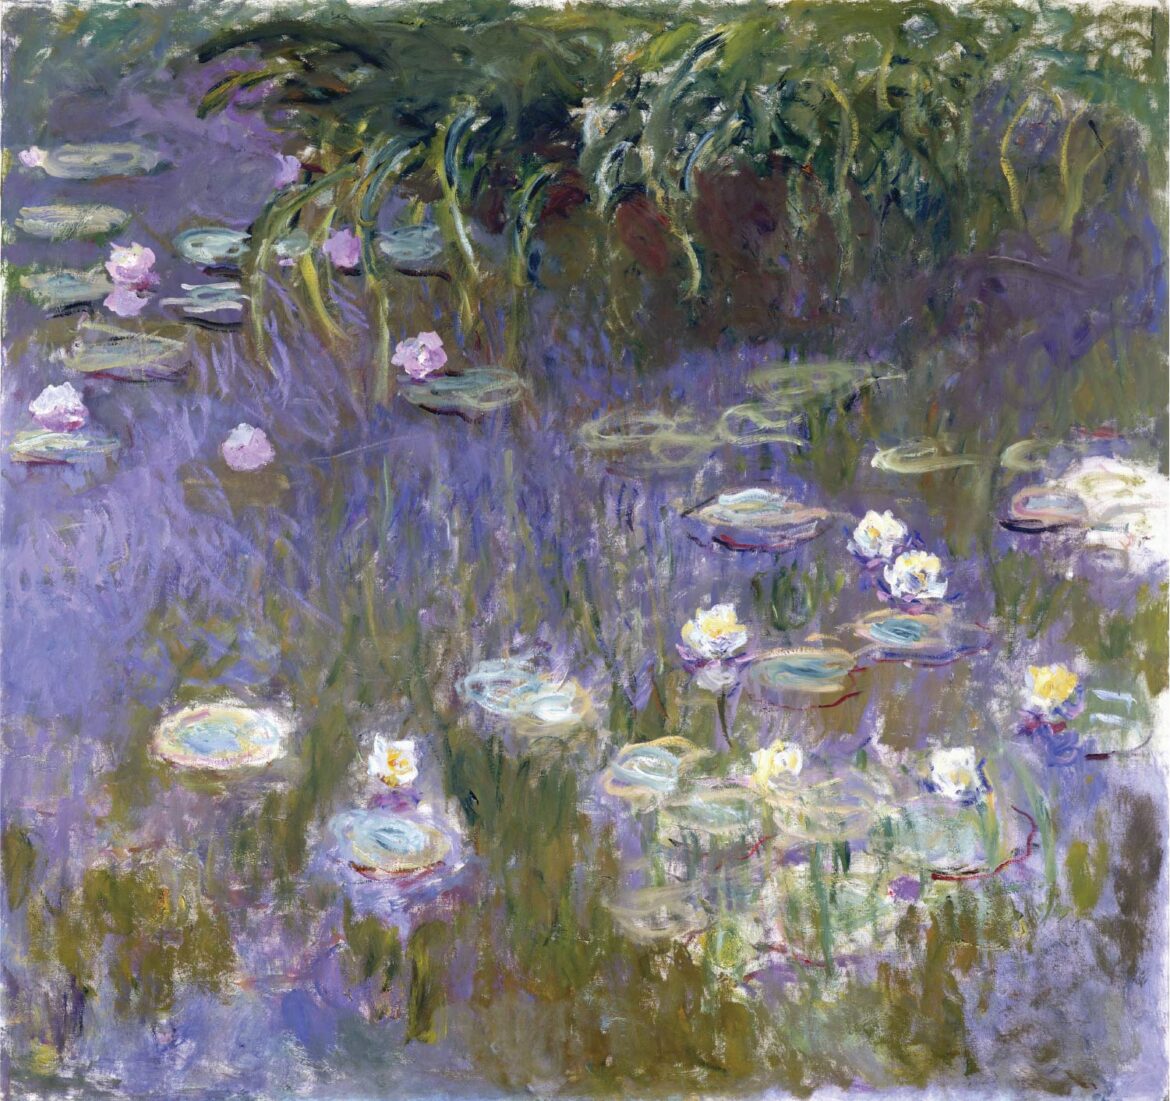 【無料壁紙】クロード・モネ「睡蓮 (1922)」 / Claude Monet_Water Lilies (1922)